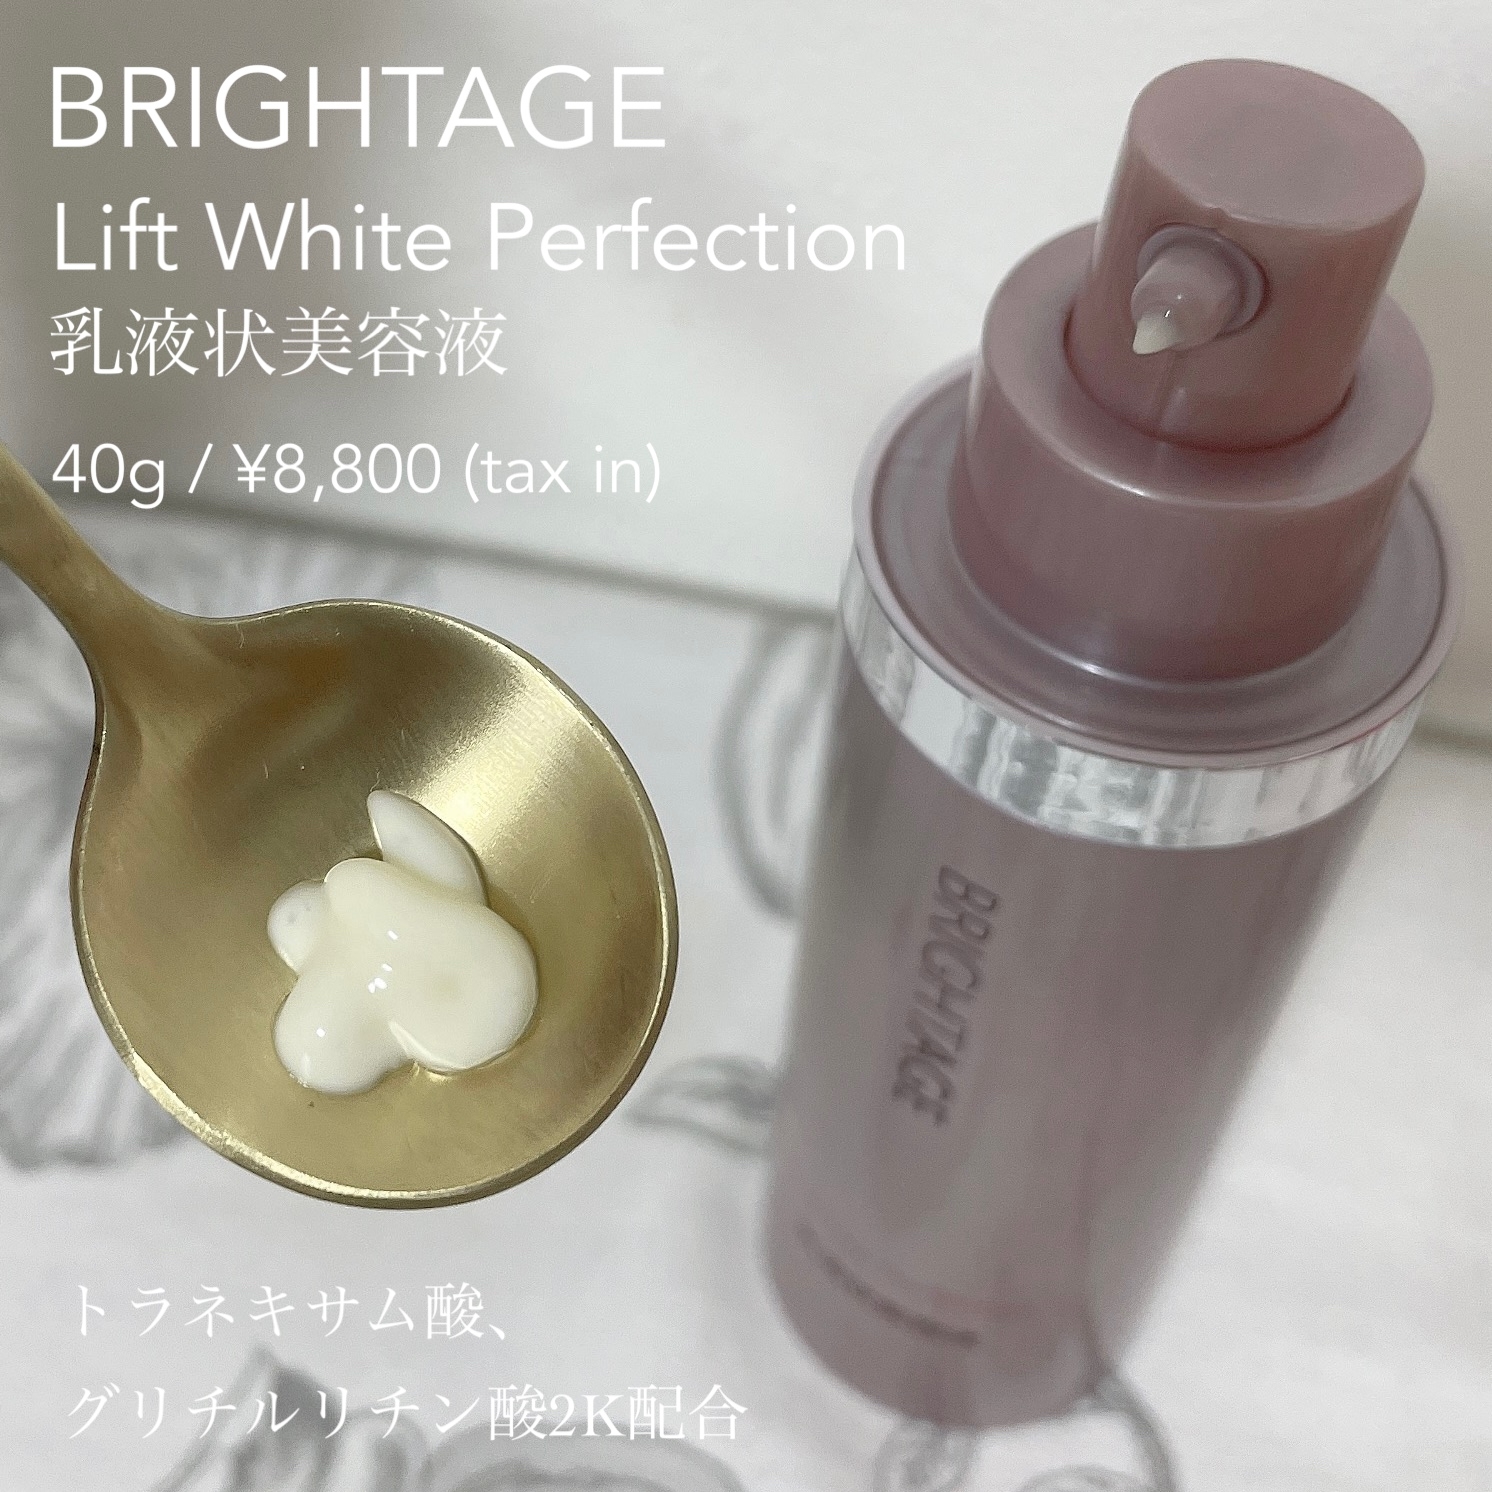 BRIGHTAGE(ブライトエイジ) リフトホワイト パーフェクションの良い点・メリットに関するもいさんの口コミ画像2